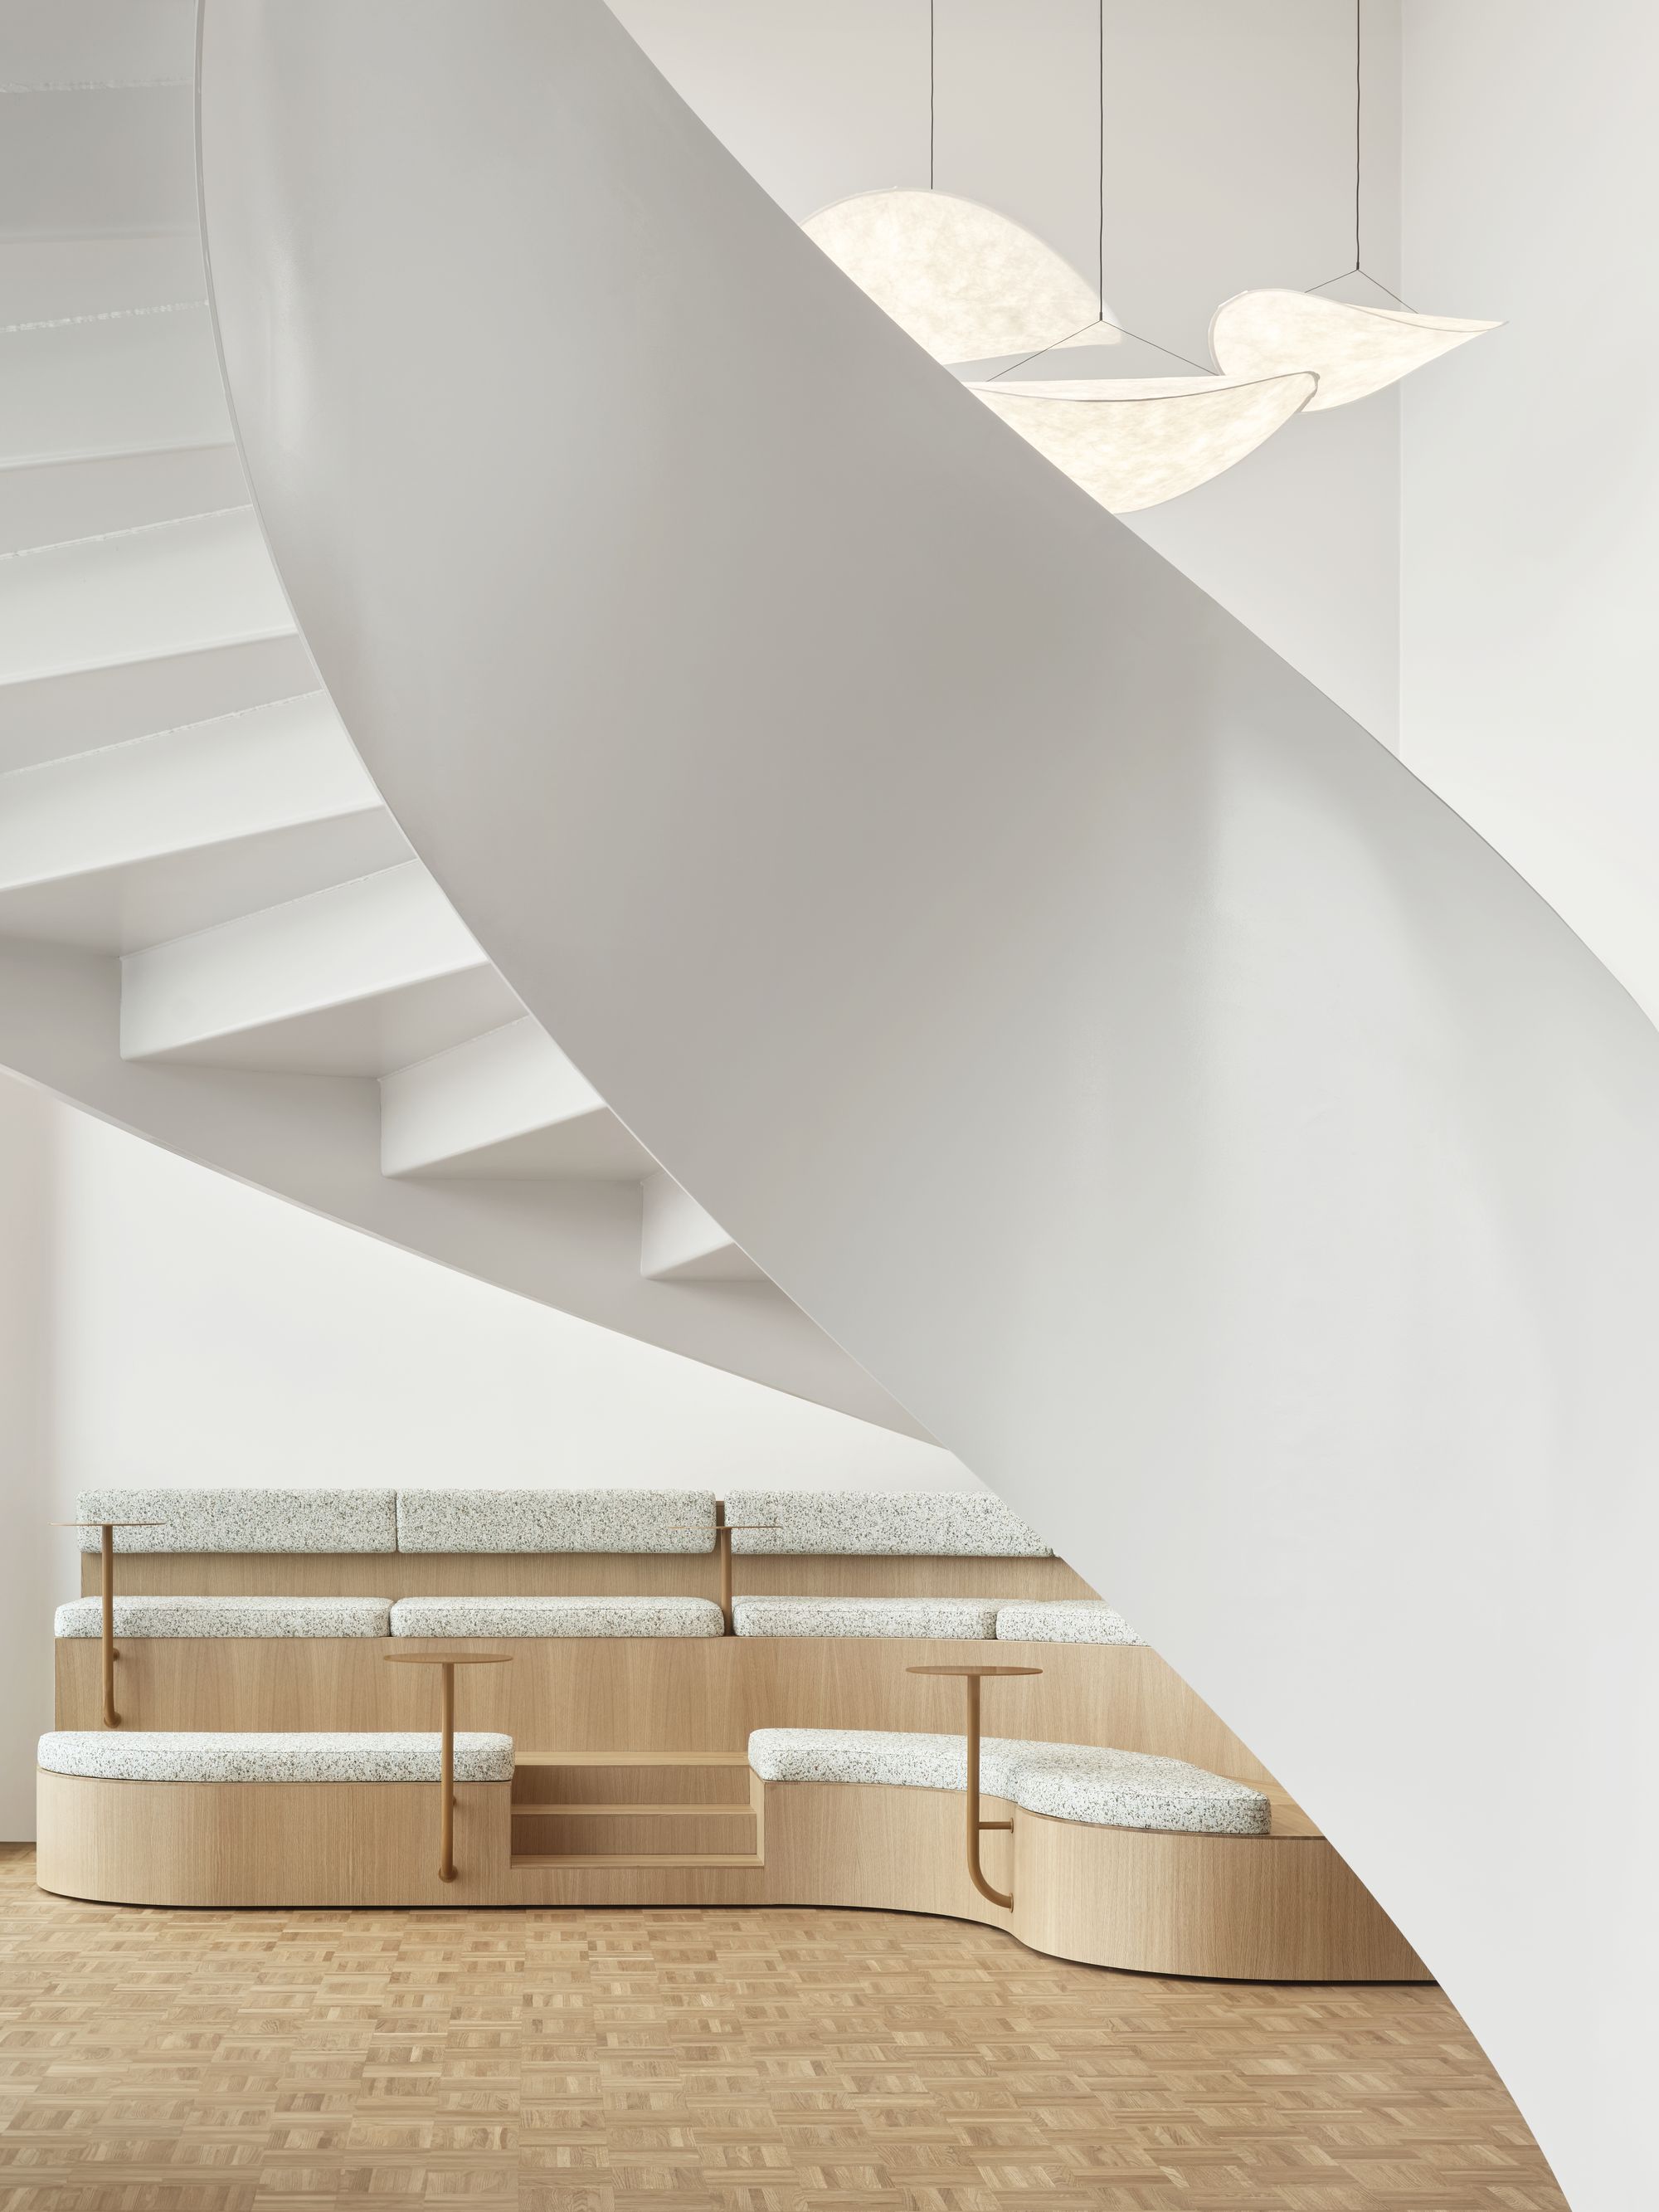 图片[12]|安永办事处-赫尔辛基|ART-Arrakis | 建筑室内设计的创新与灵感